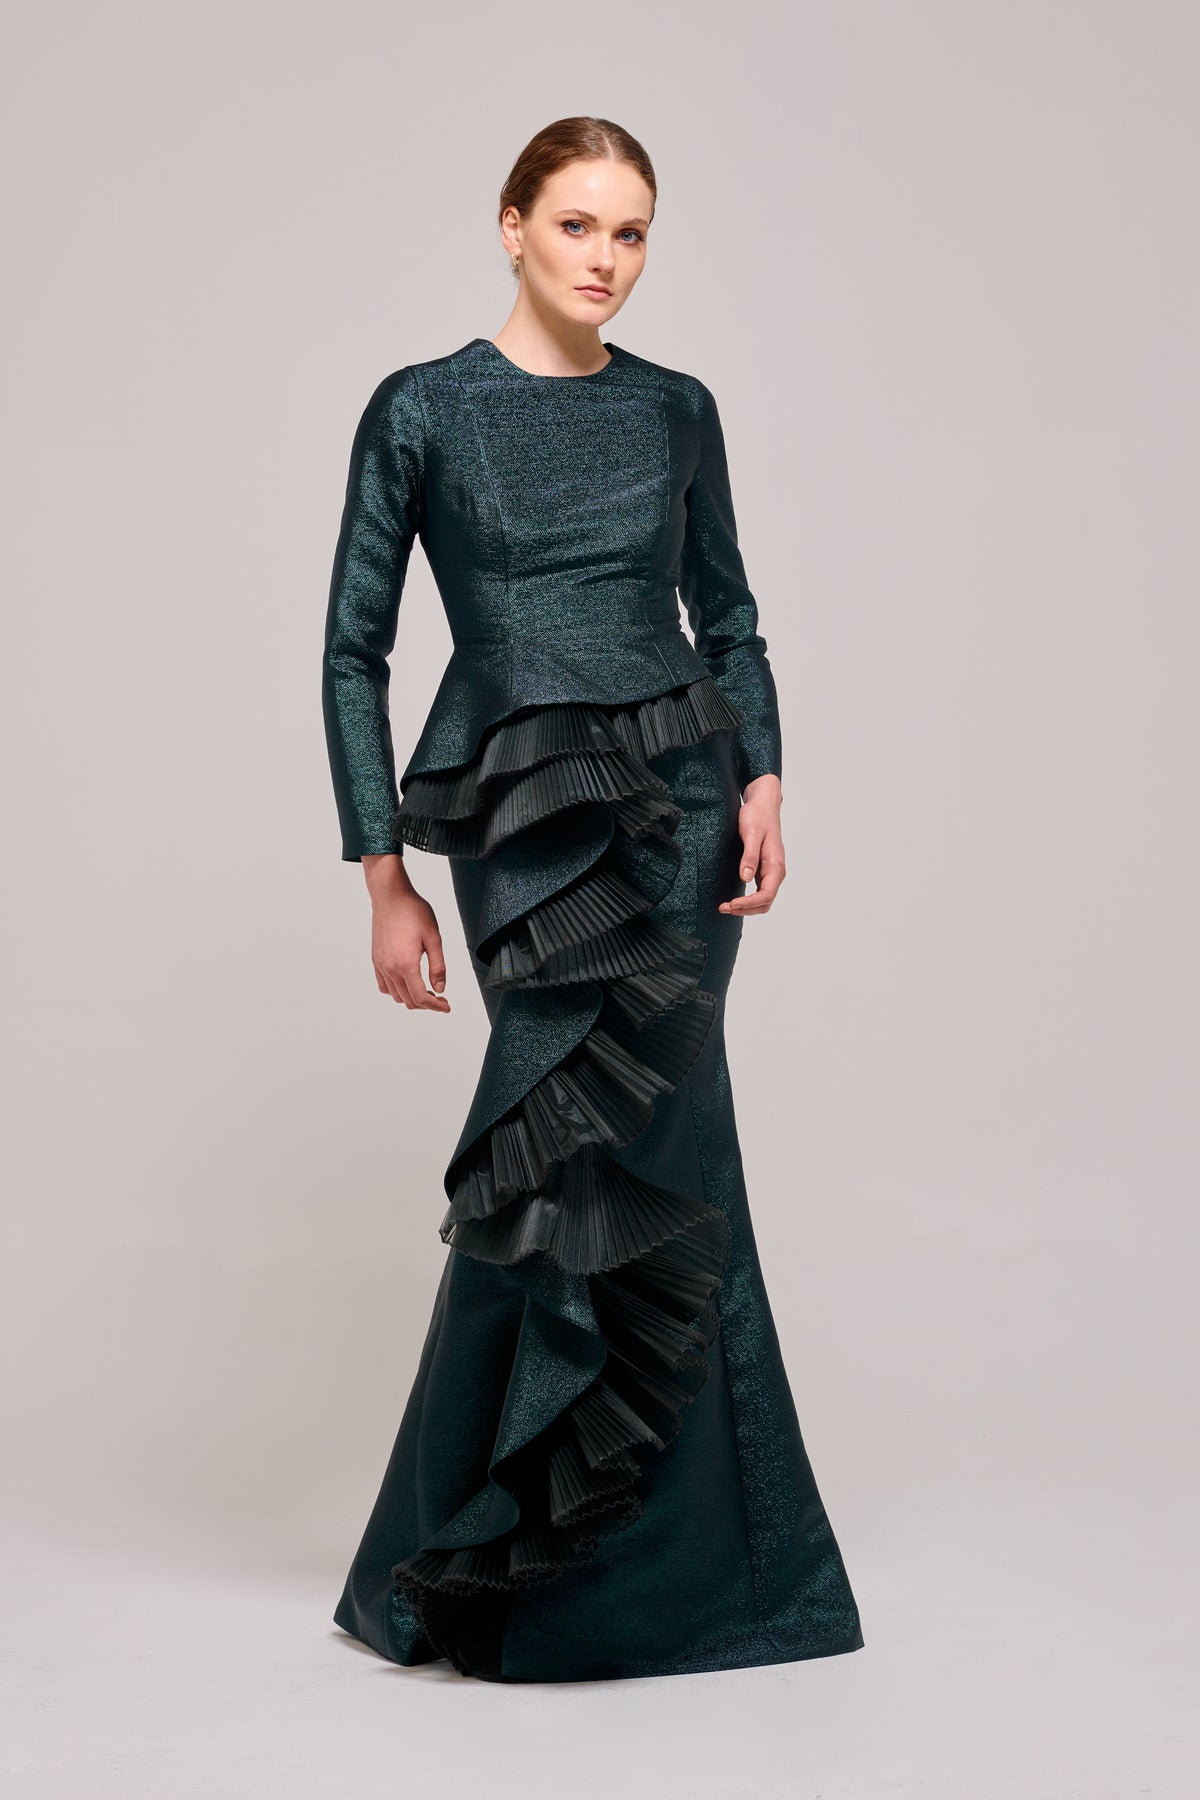 Ruffled Peplum Details Long Sleeve Dress – John Paul Ataker